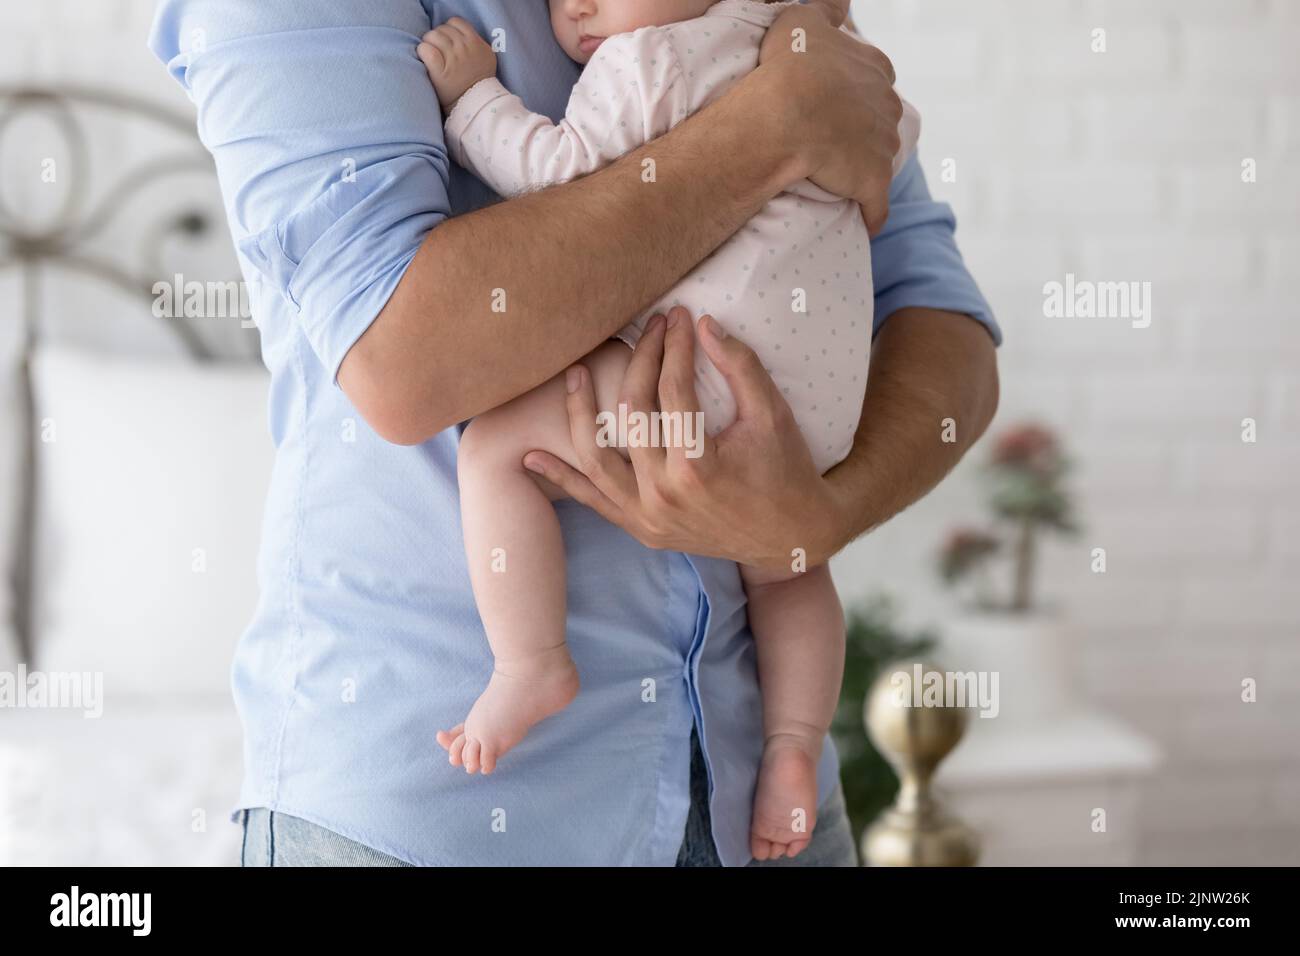 Abgeschnittene Aufnahme unbekannter Vater hält sein neugeborenes Baby auf den Armen Stockfoto